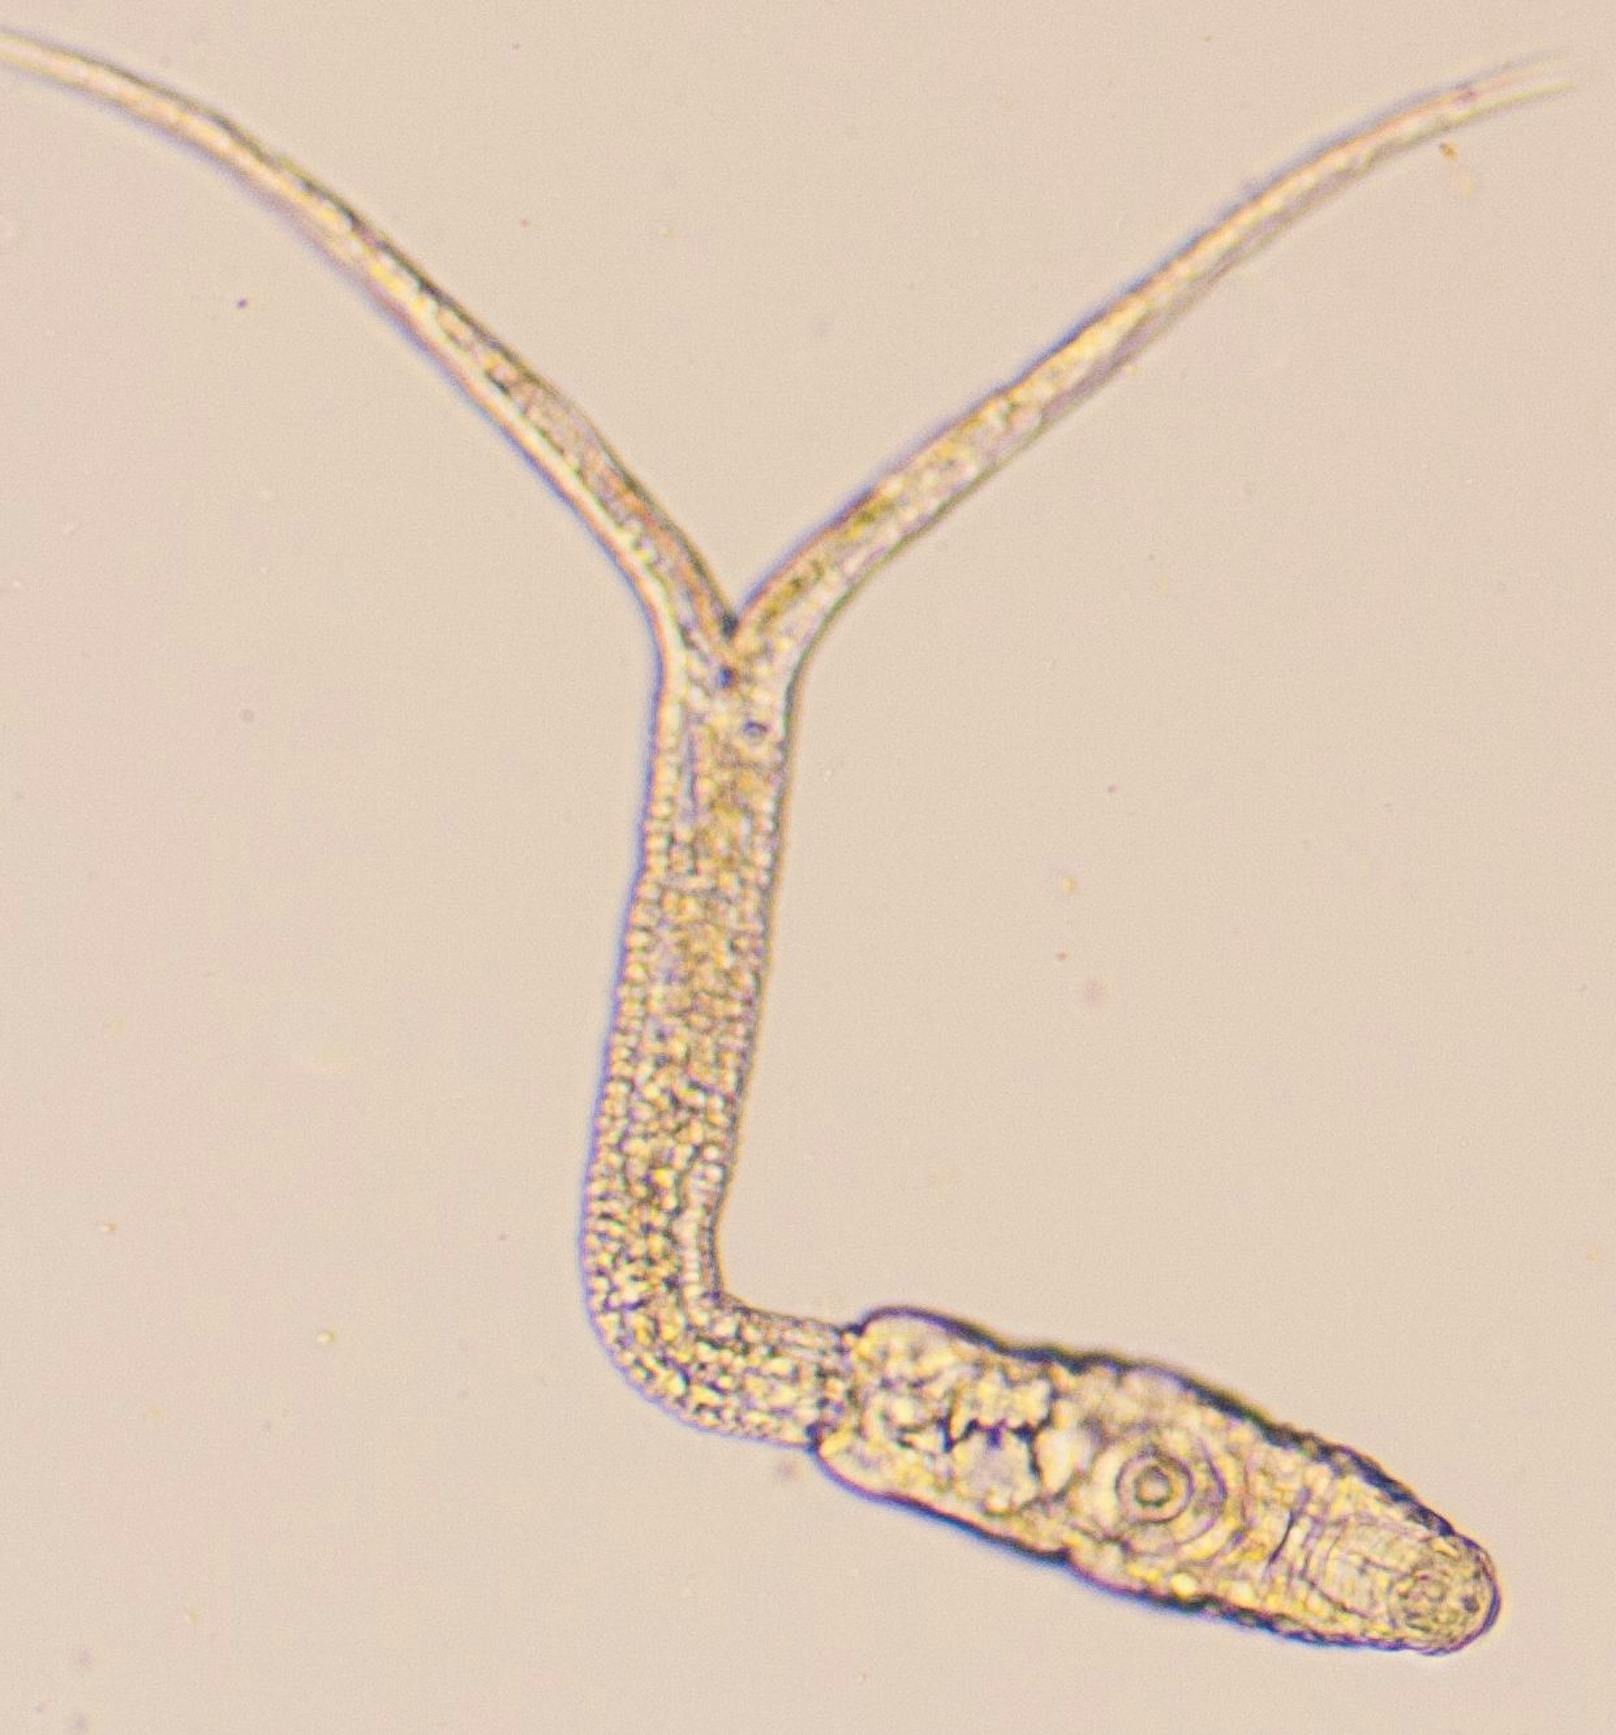 So sieht eine Zerkarie unter dem Mikroskop aus. Eine dieser Art findet man im Linzer Pleschinger See.